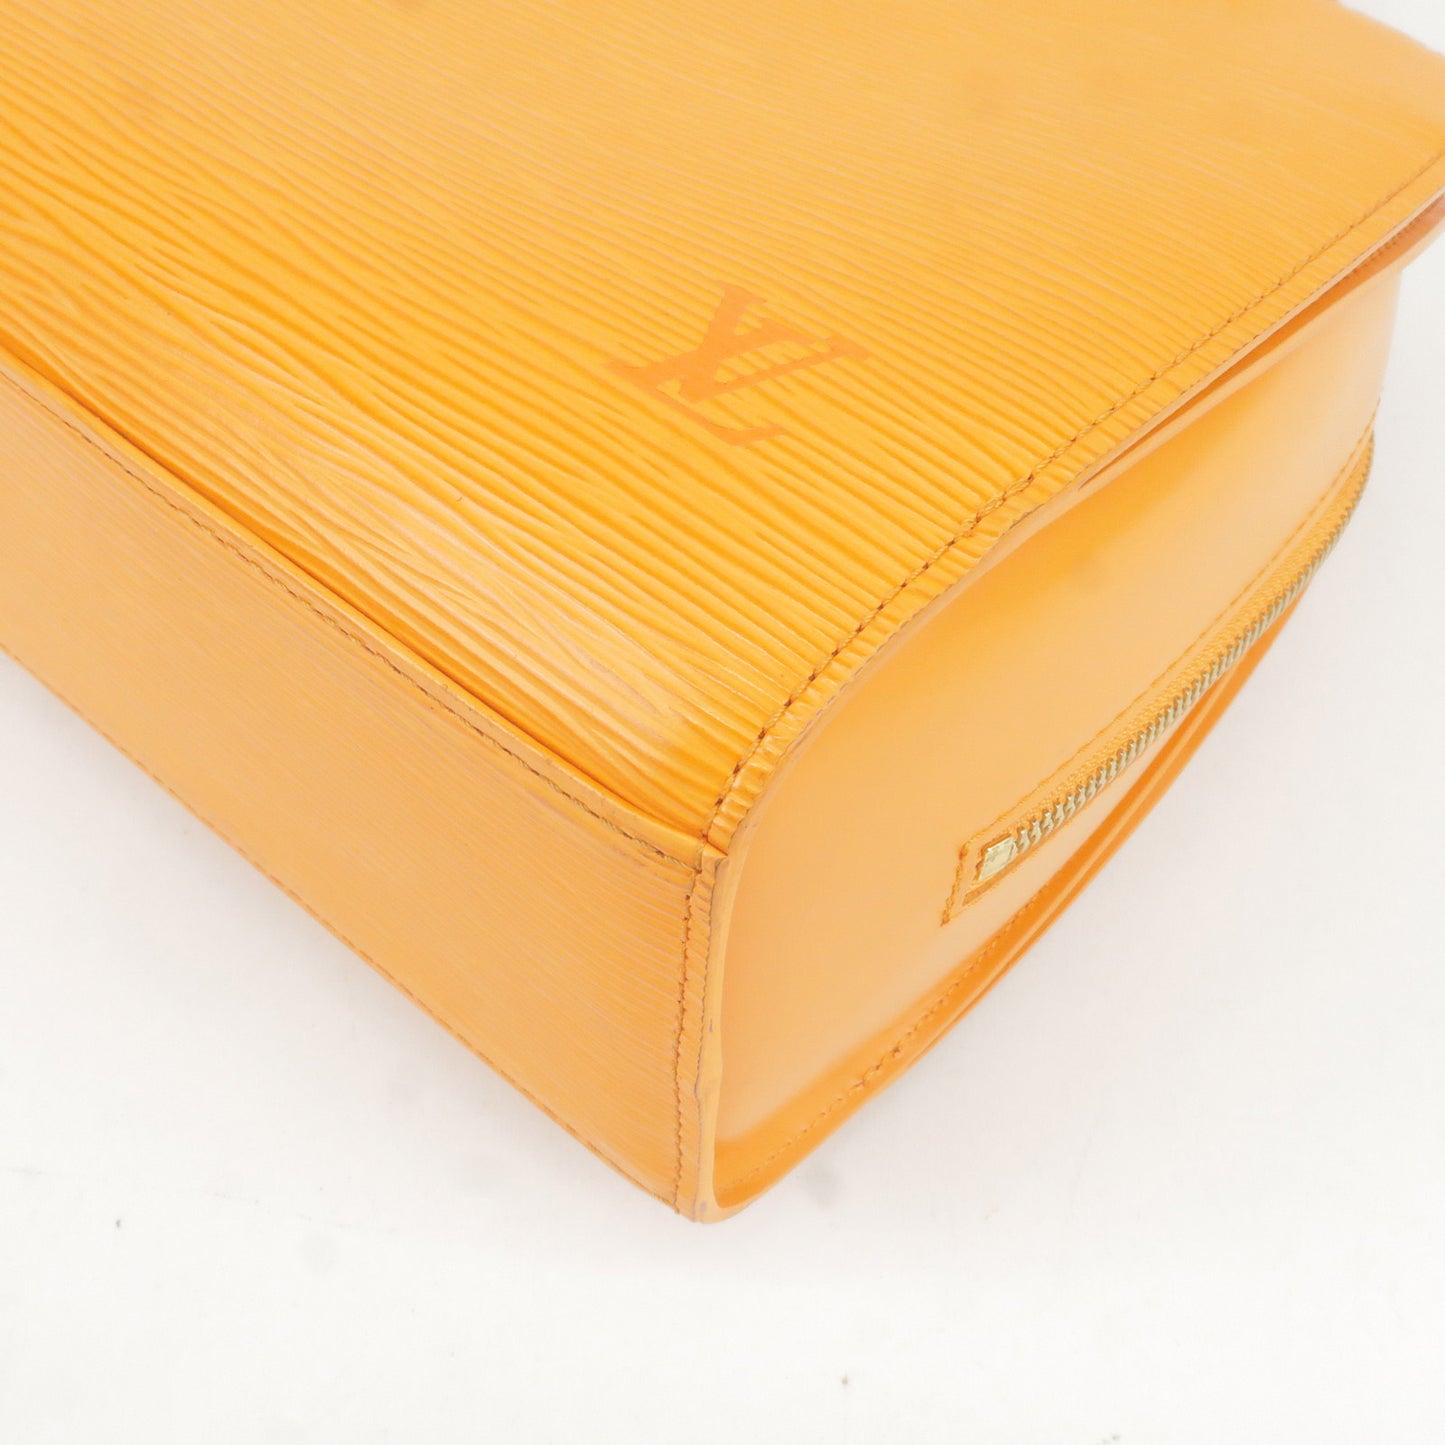 Louis Vuitton Epi Ponneuf Hand Bag Mandarin Orange M5205H